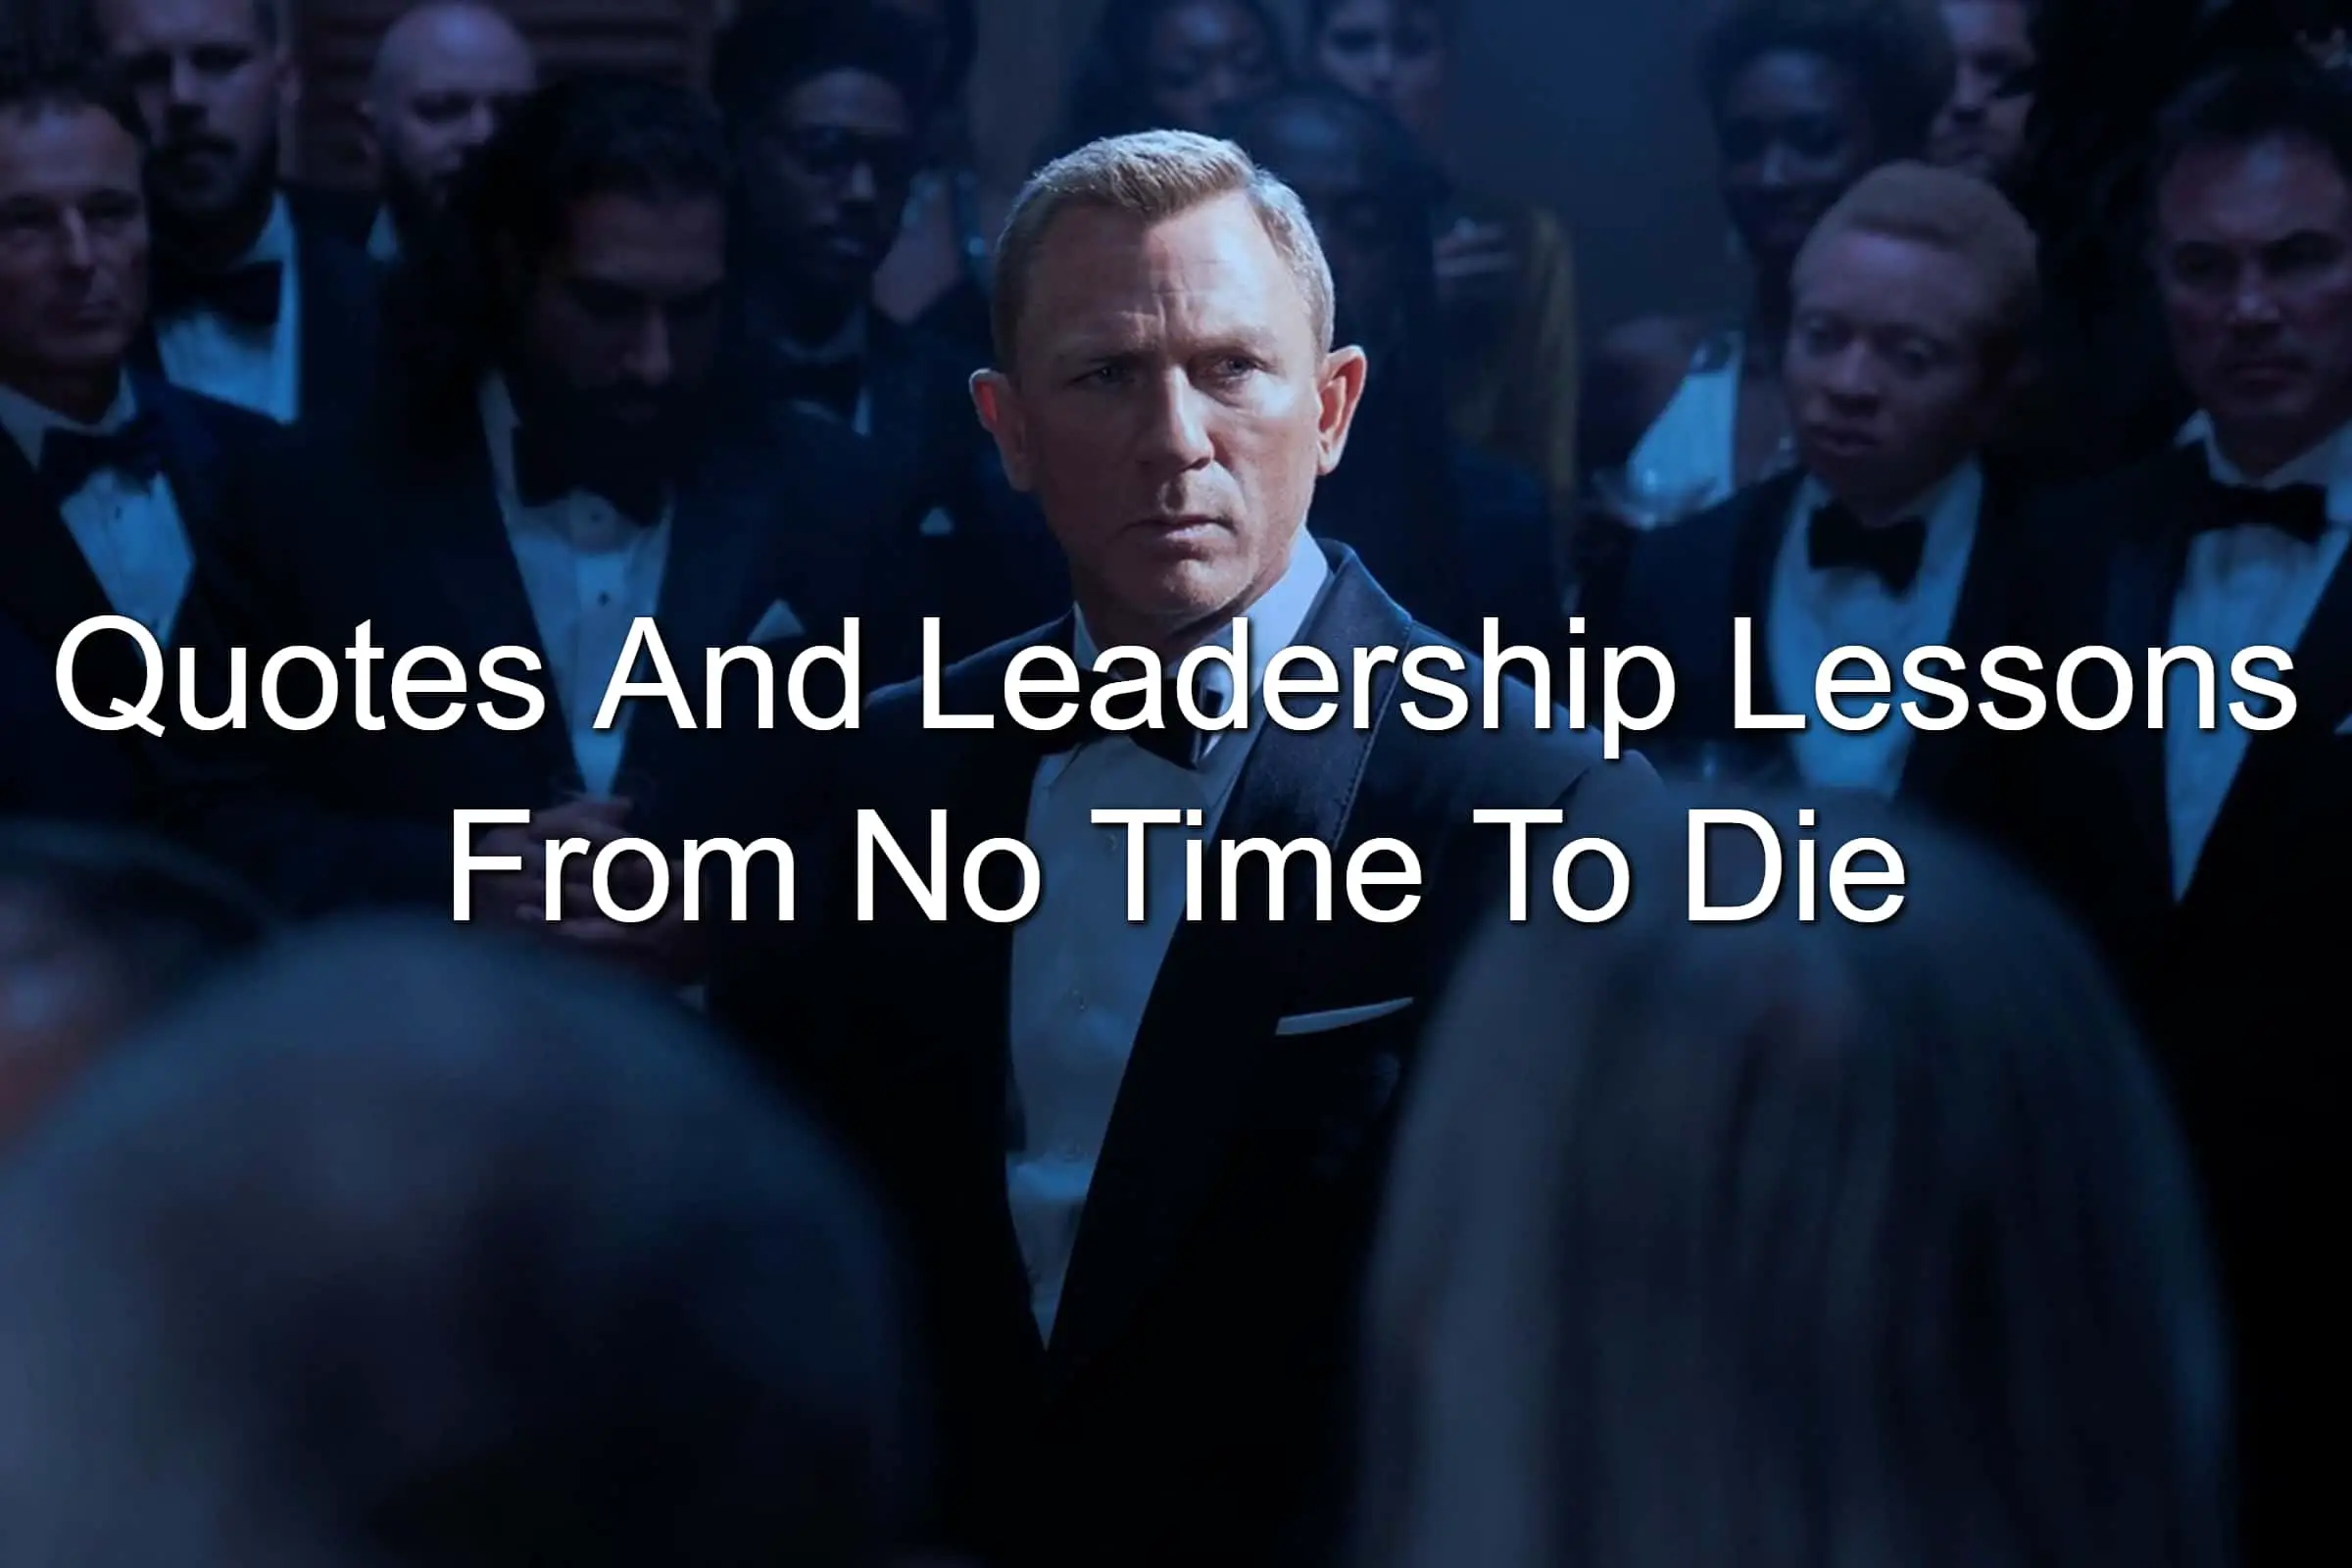 Daniel Craig as James Bond in No Time To Die movie